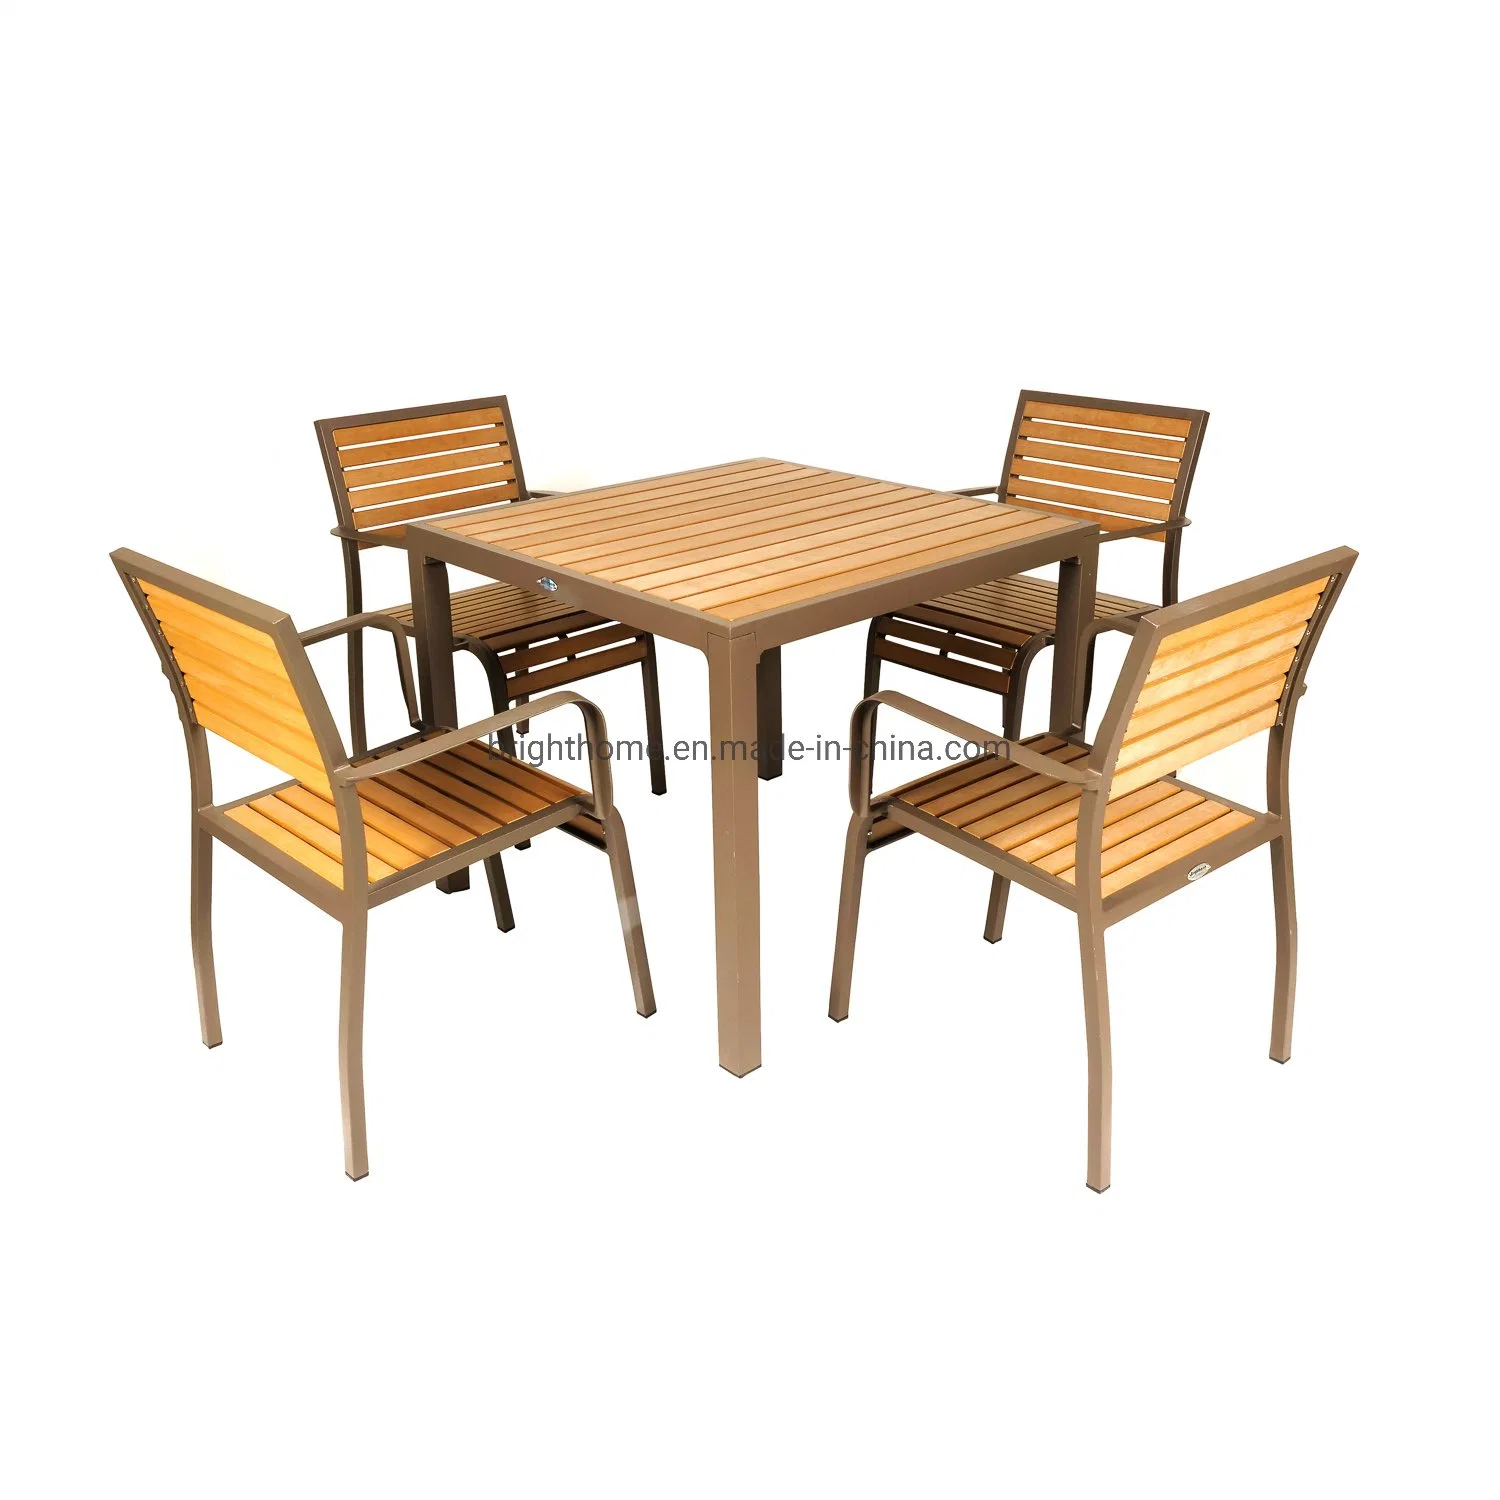 La madera de plástico aluminio silla y mesa comedor al aire libre